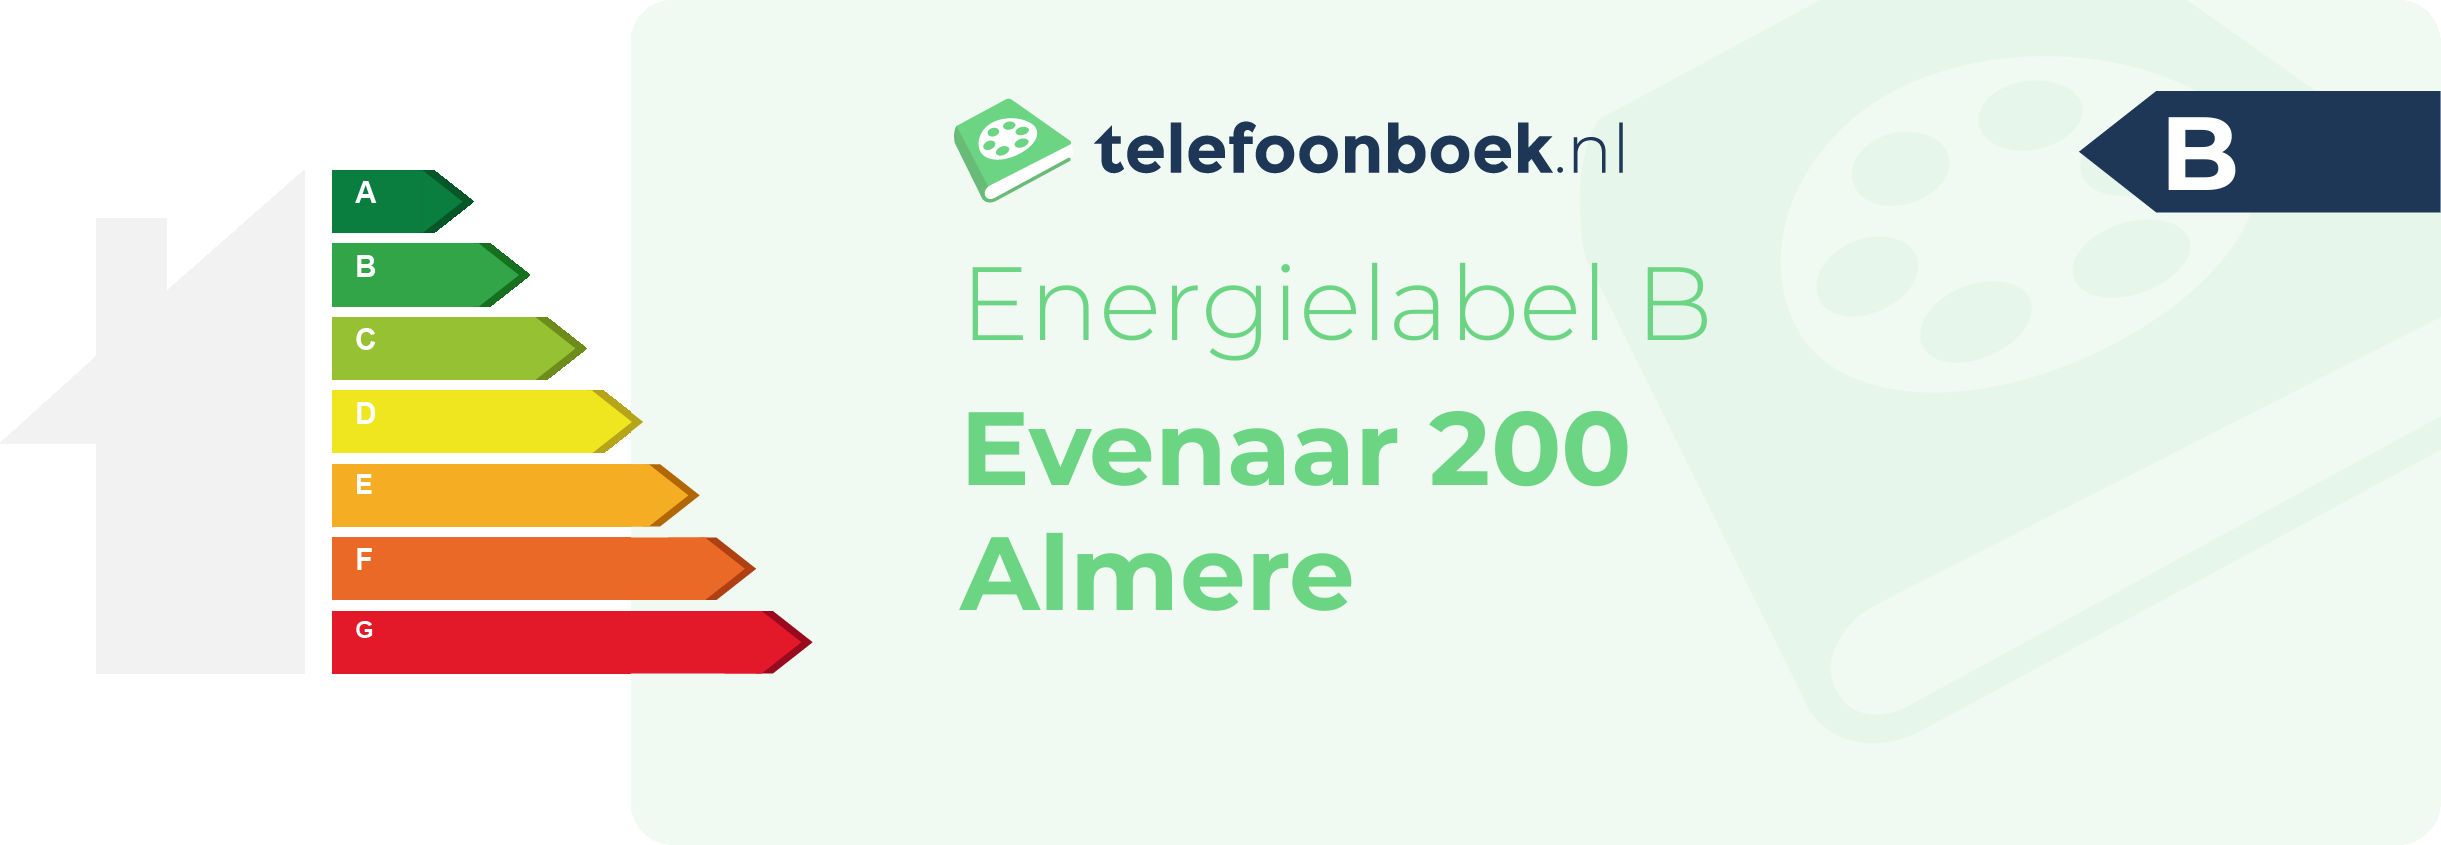 Energielabel Evenaar 200 Almere